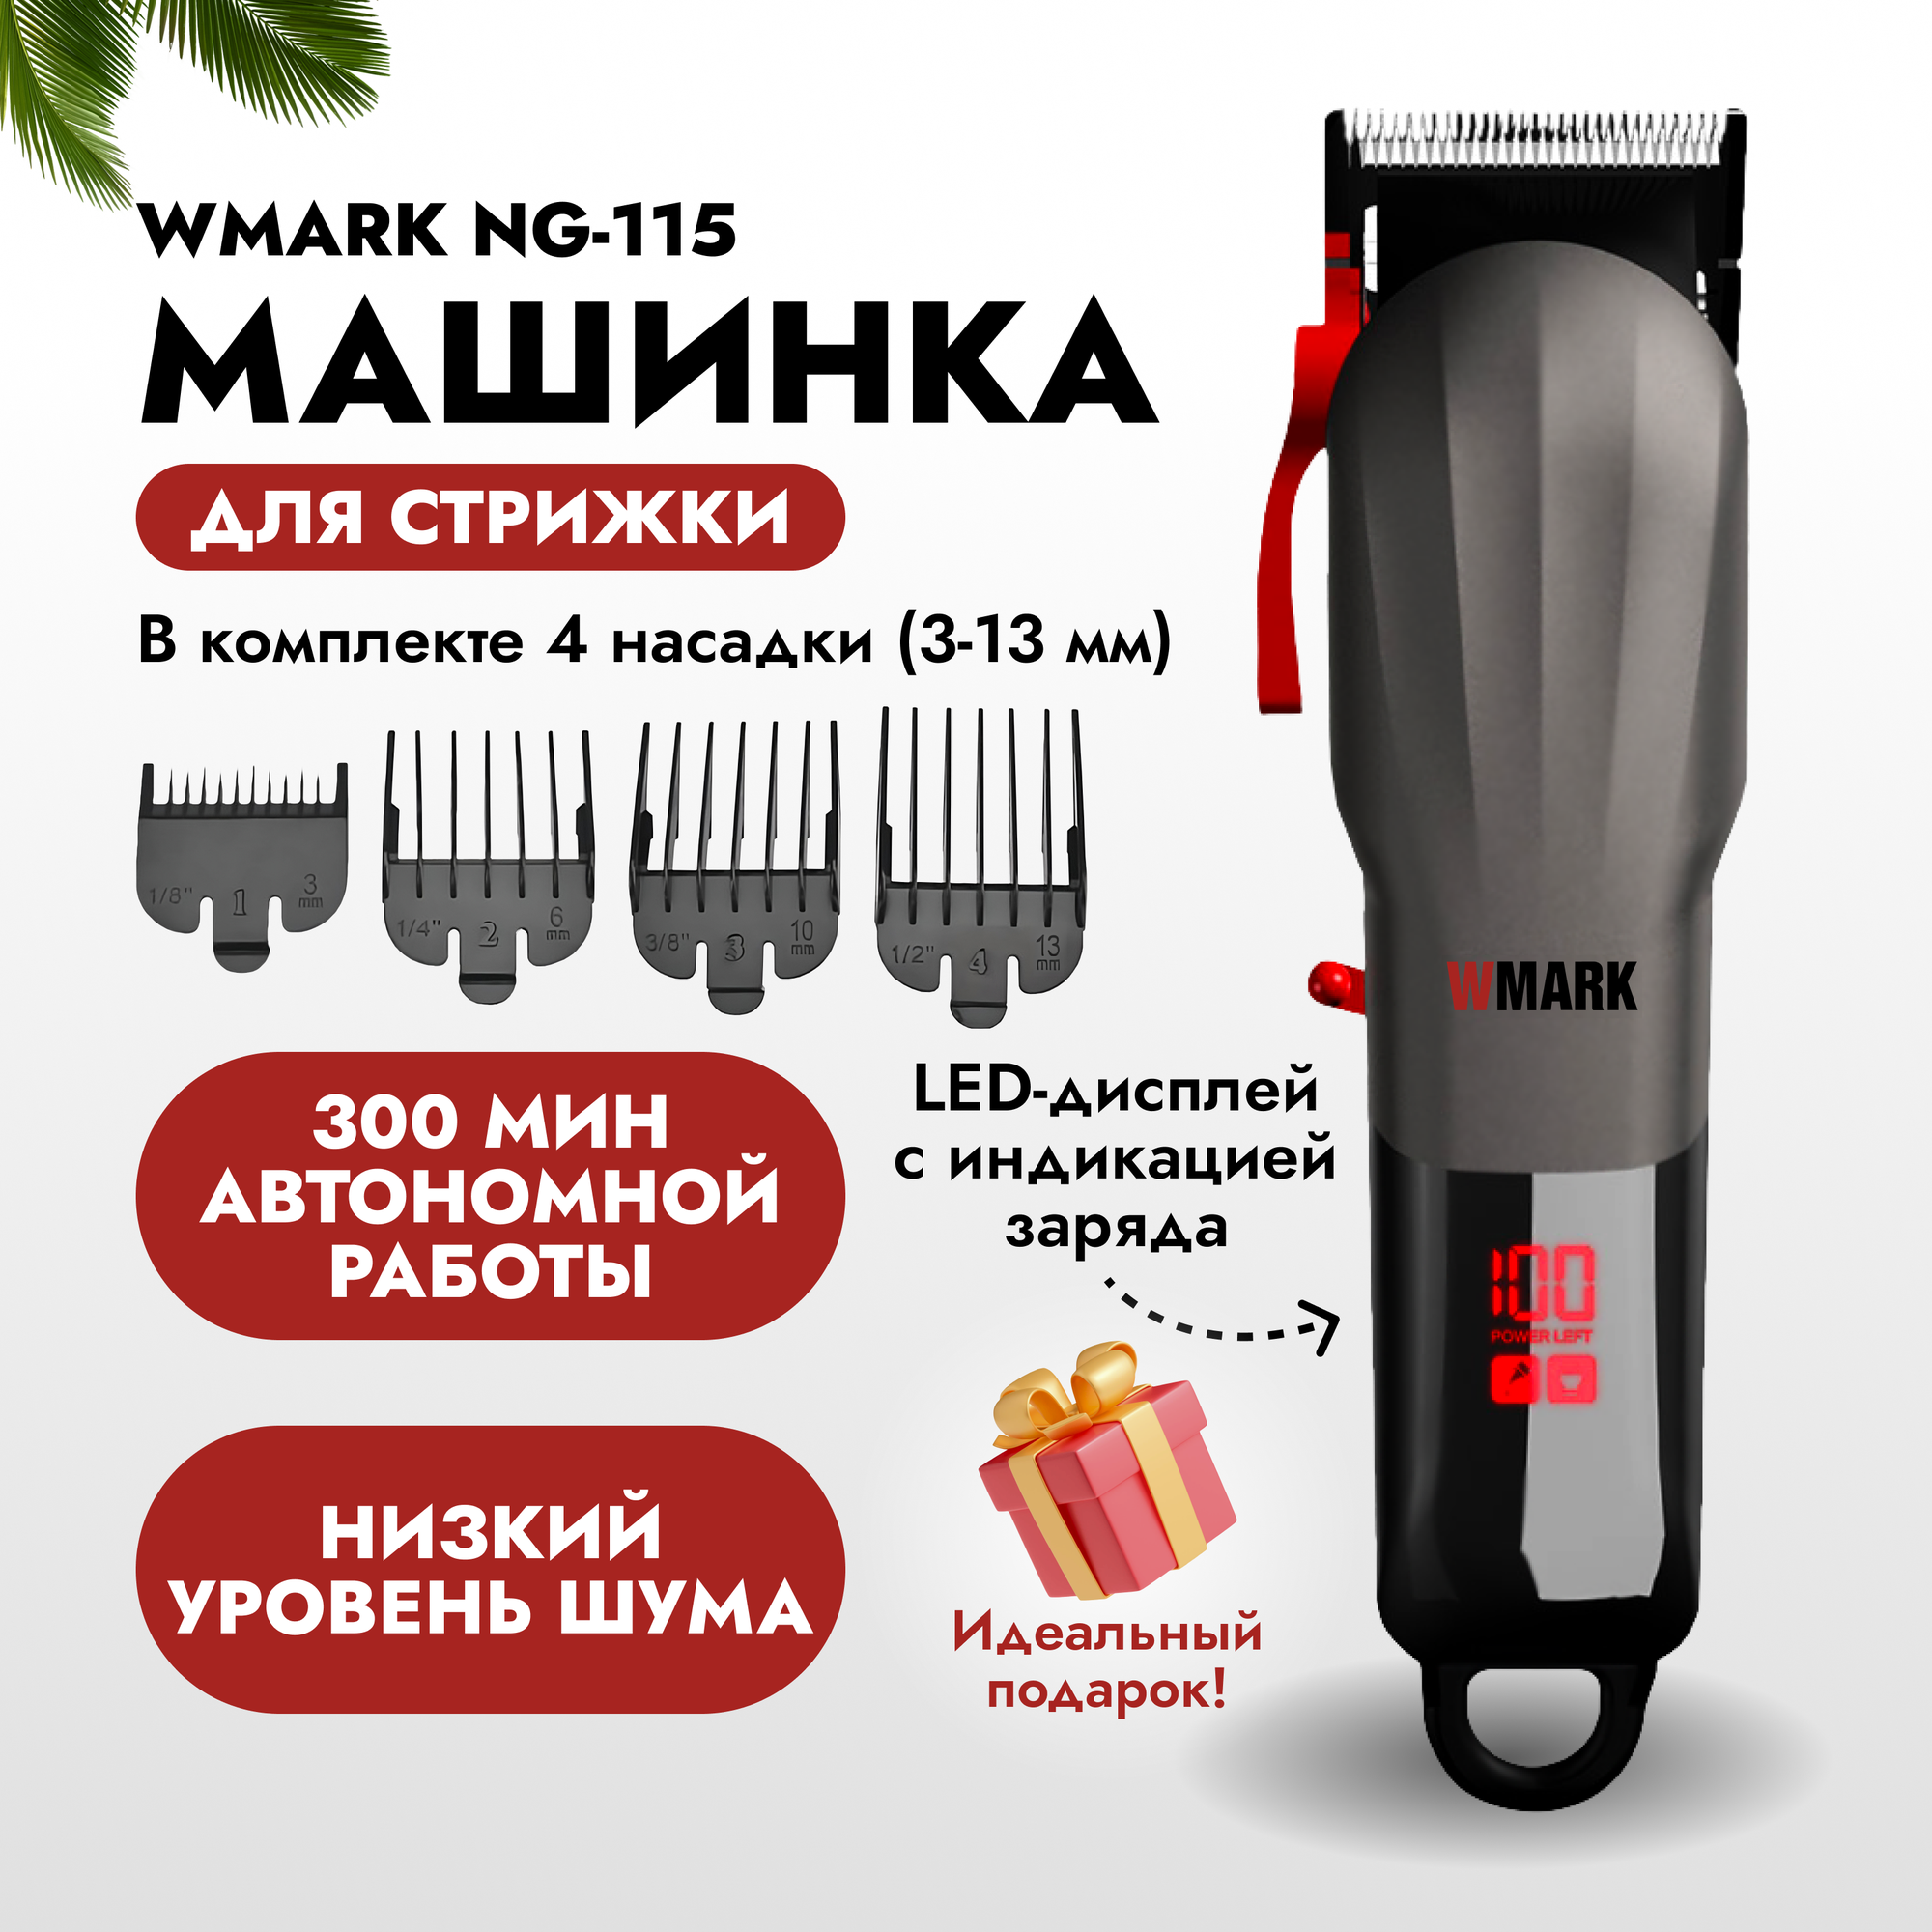 Профессиональная машинка для стрижки волос NG-115. Набор для барбера / парикмахера WMARK